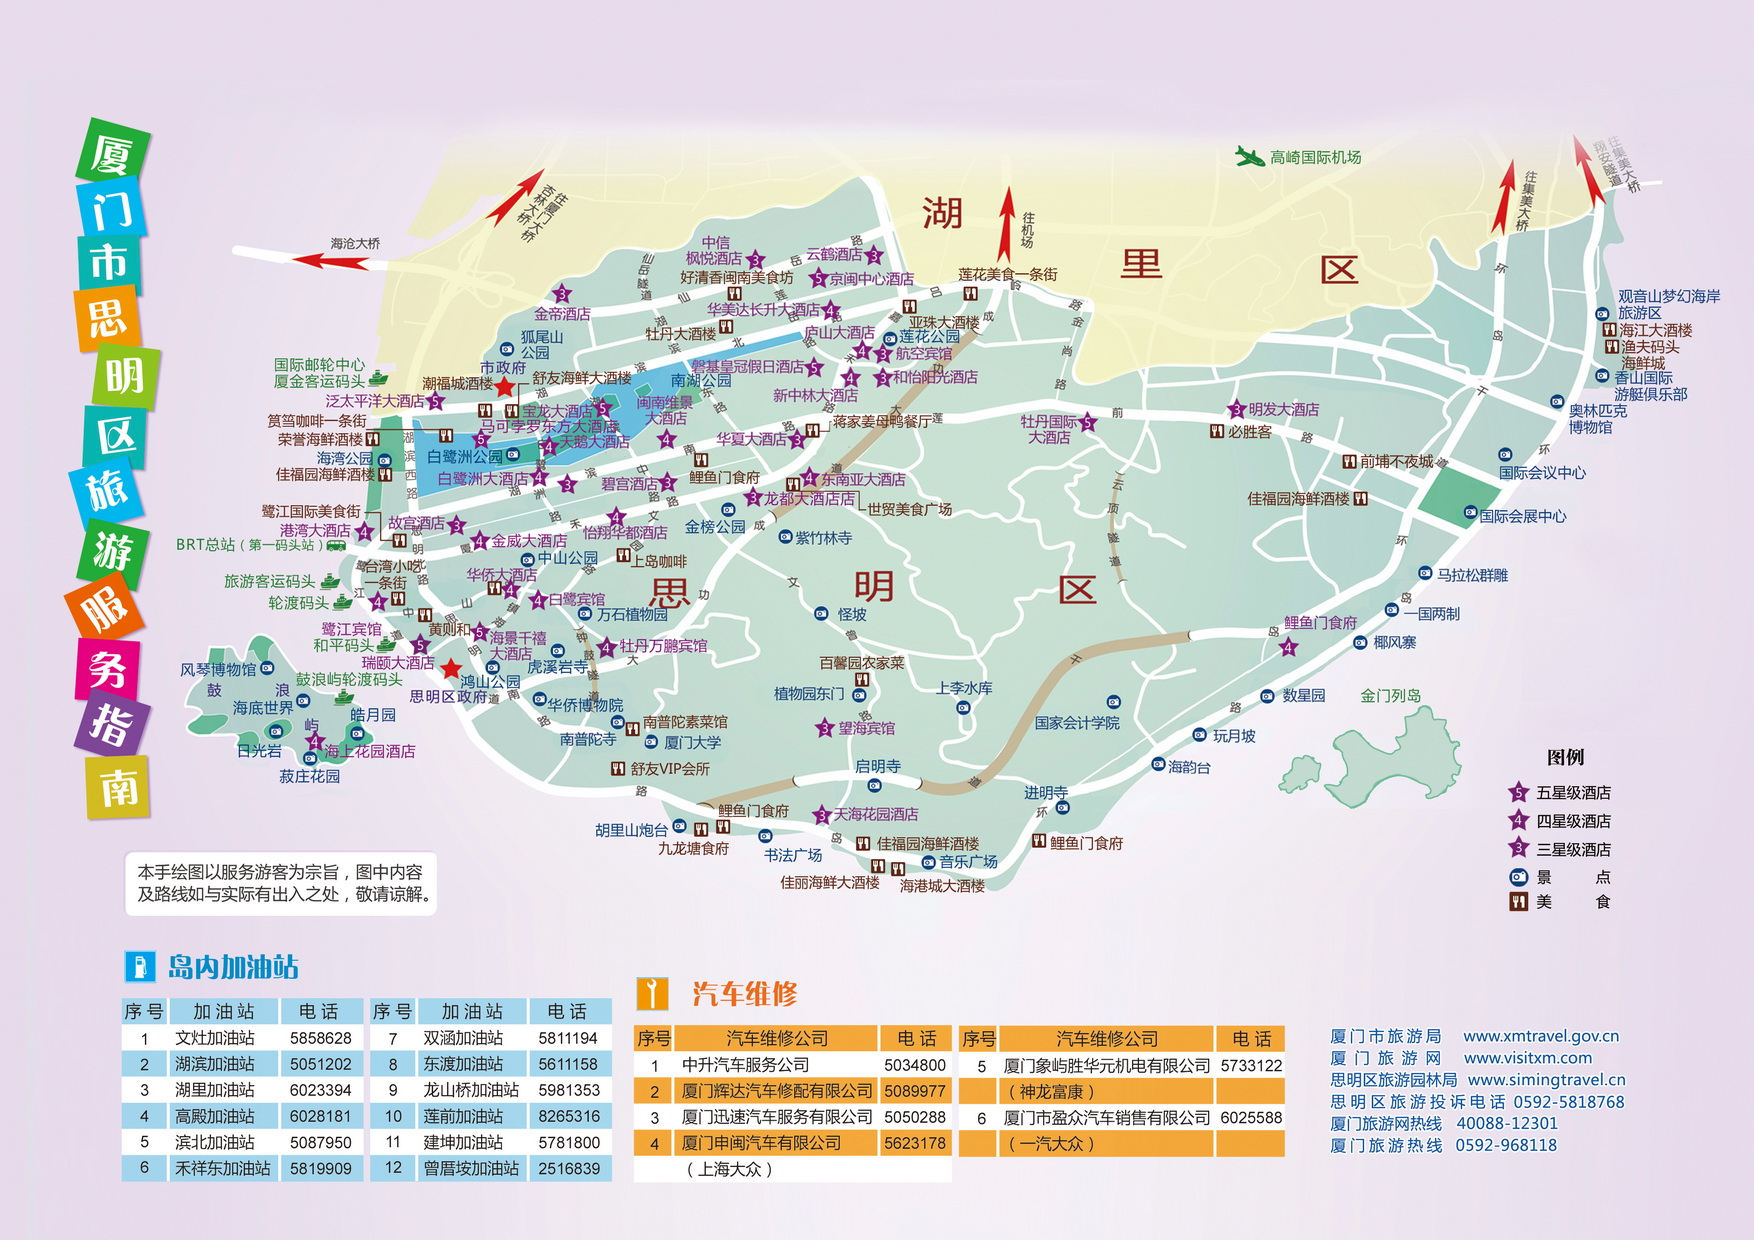 厦门市思明区景区景点沿线主要停车场一览表(地名参照百度地图)